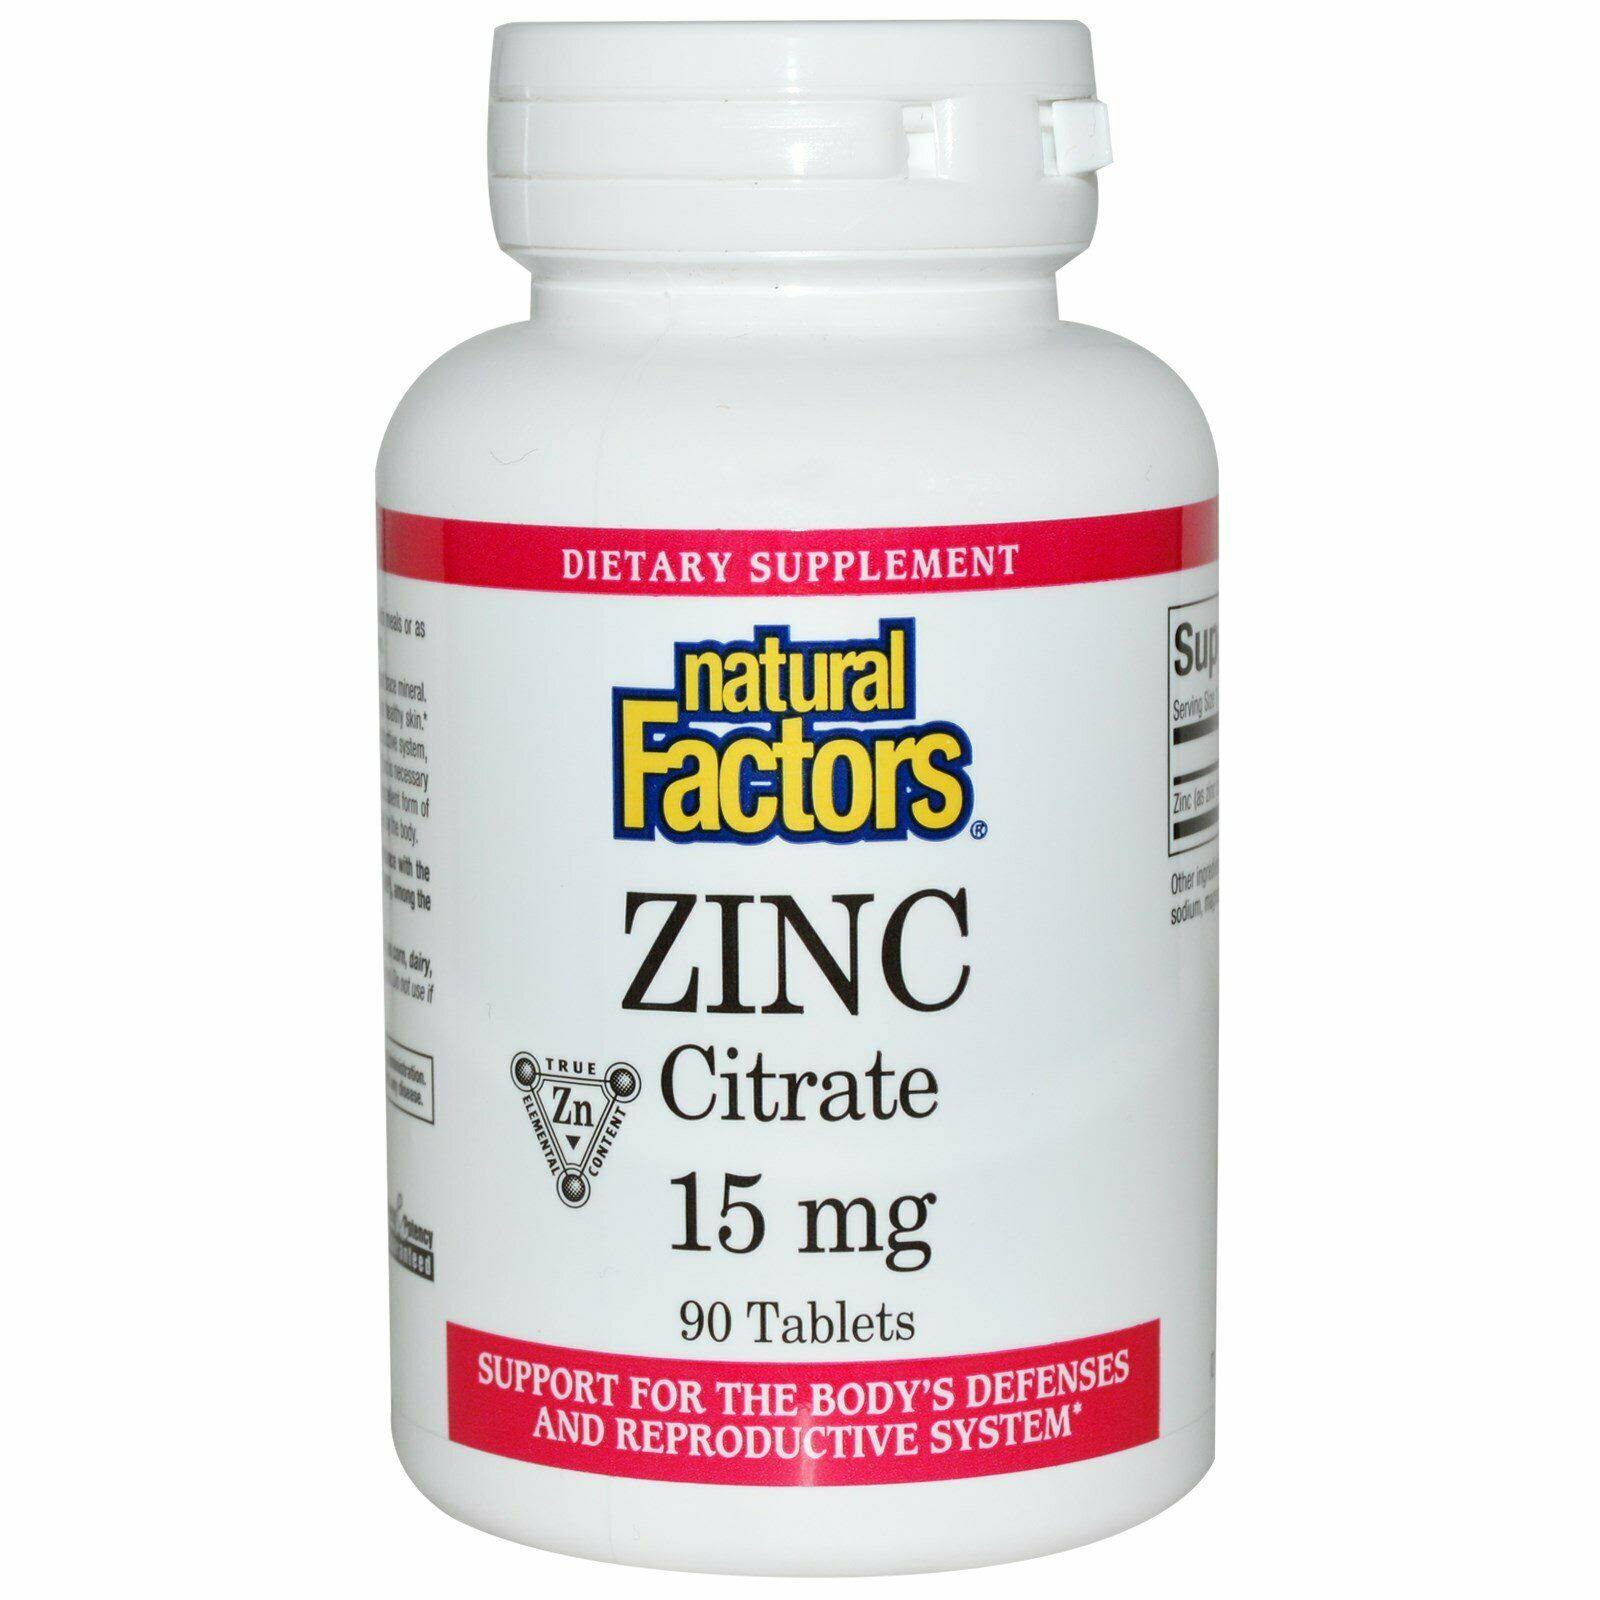 Natural Factors Zinc Citrate Supplement - 90 Tablets